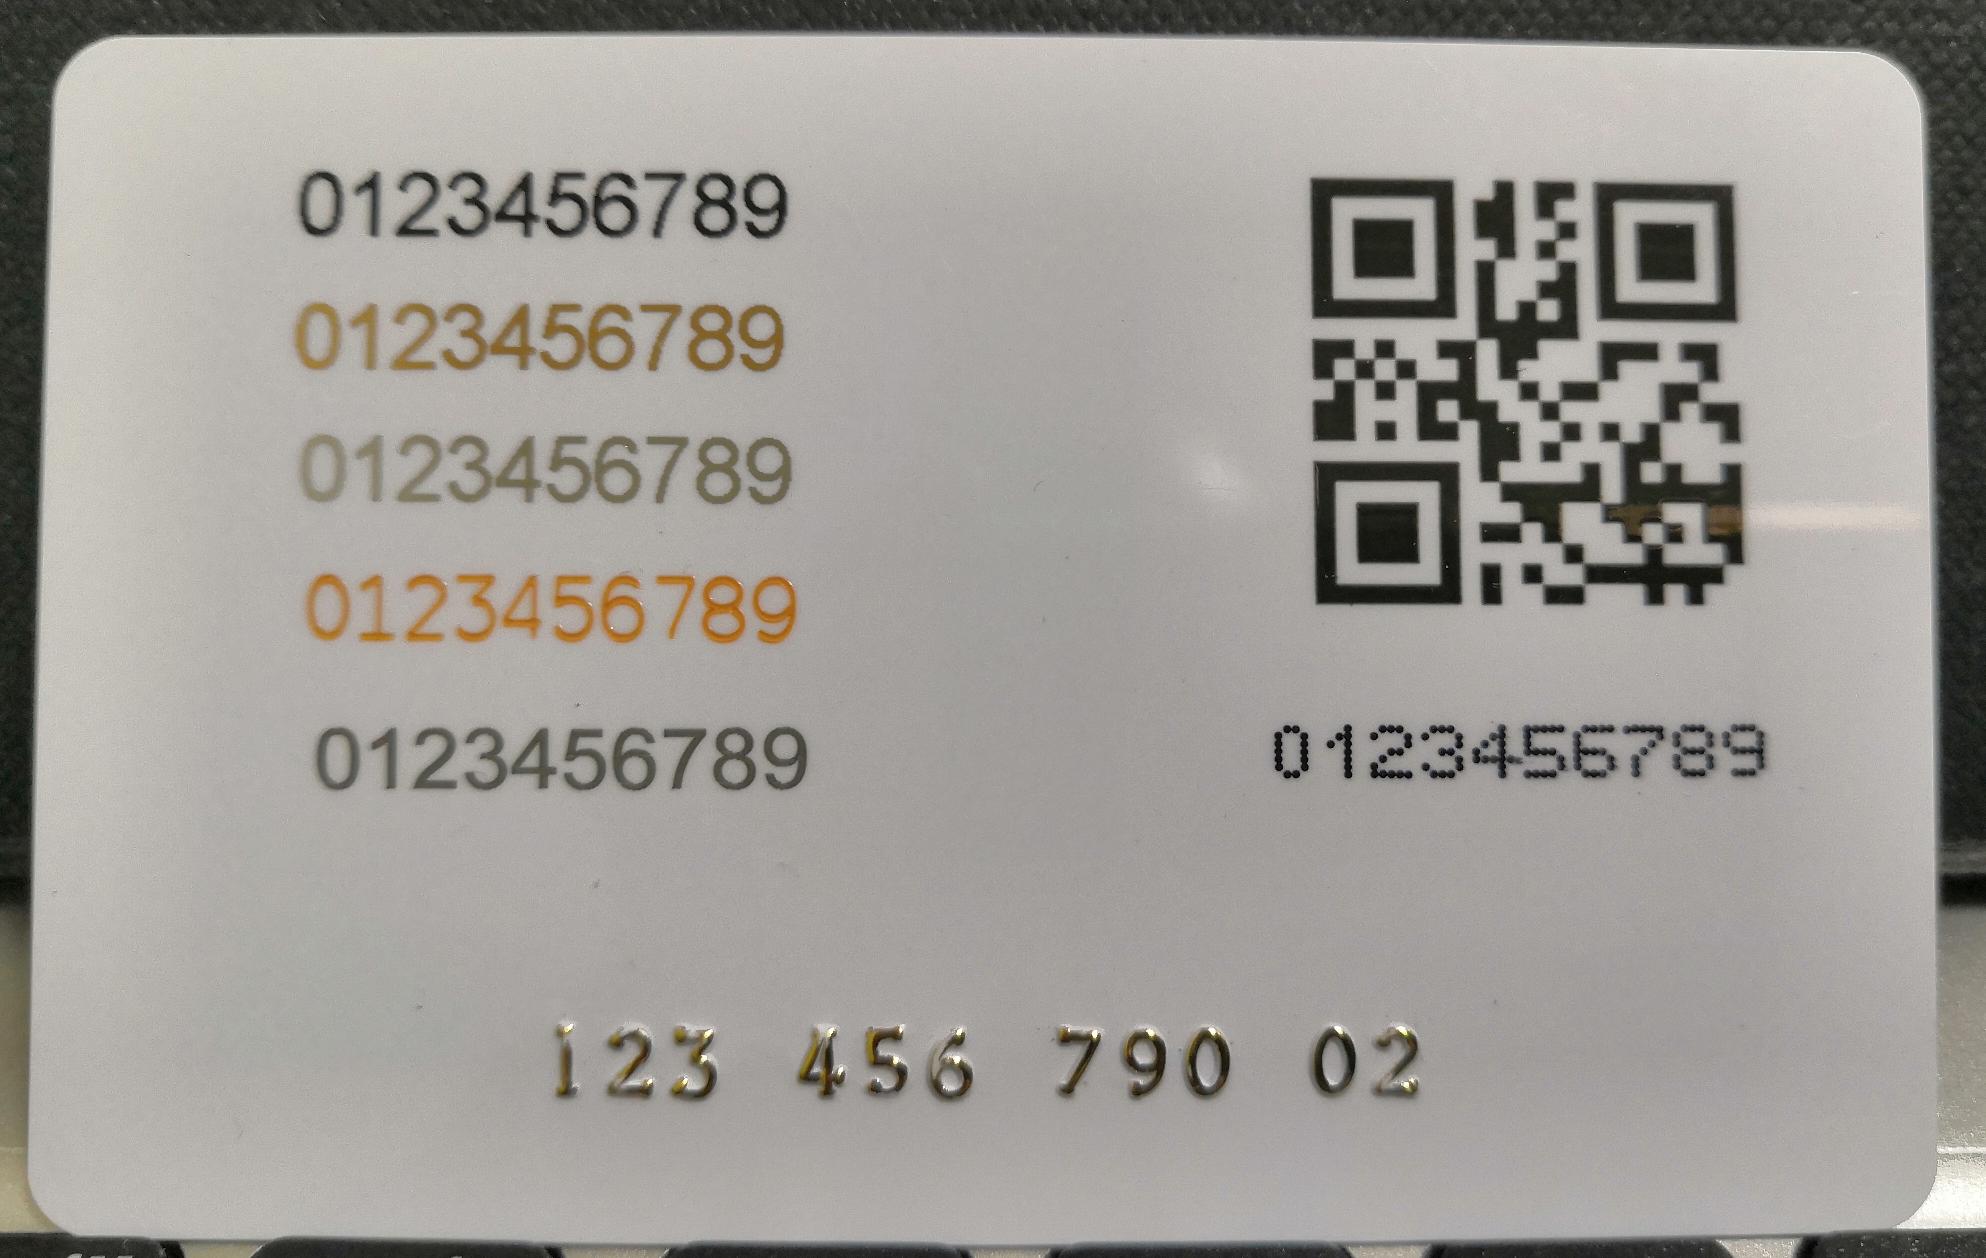 6 Ways to Print Serial Numbers on RFID Cards